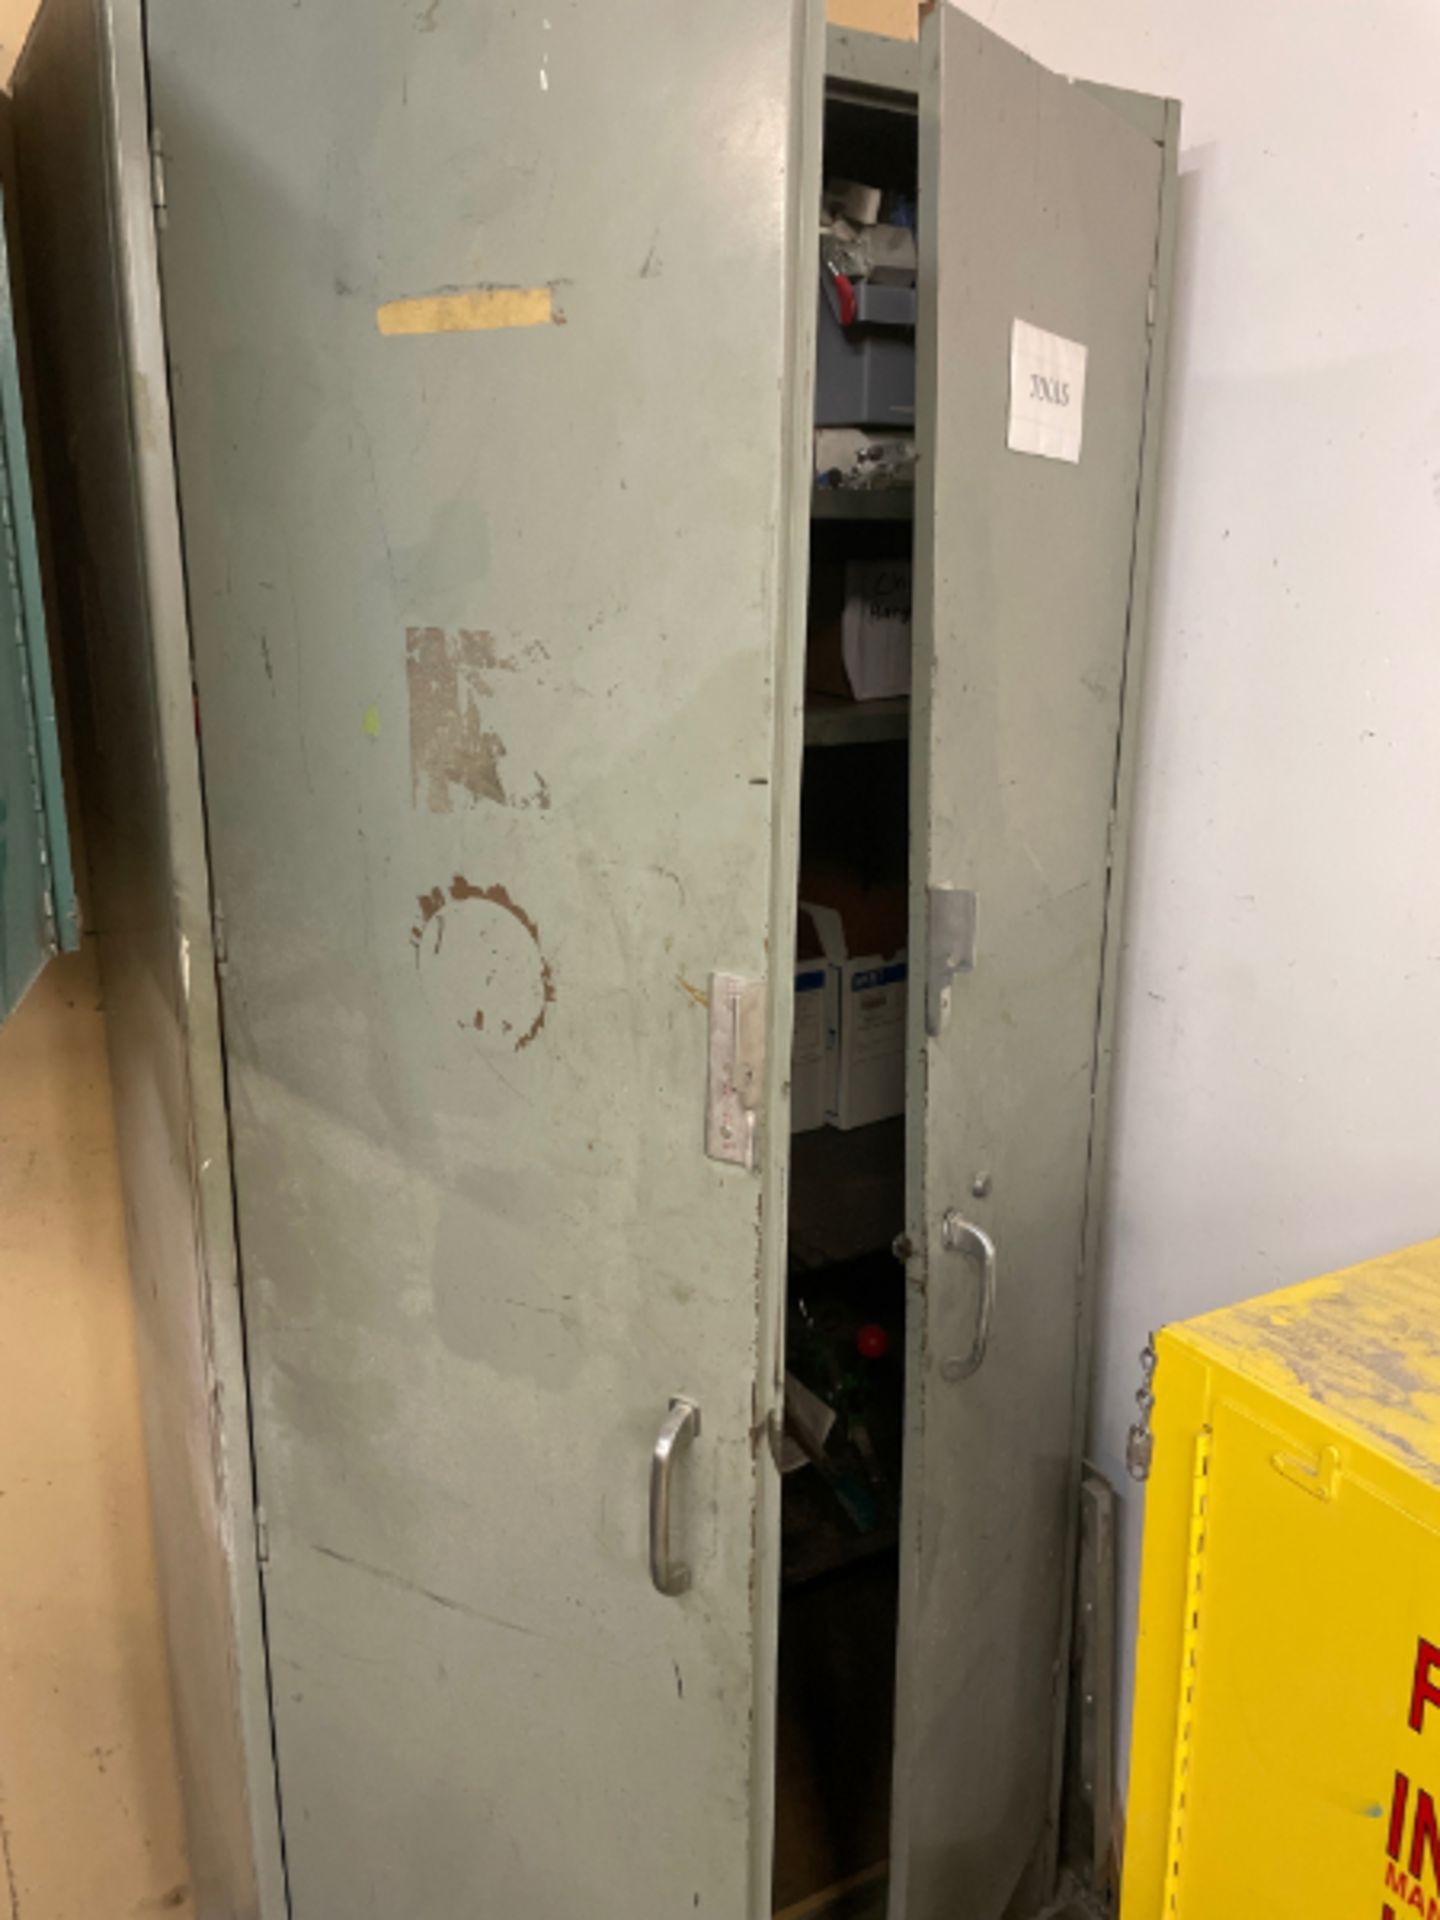 2 Door Metal Cabinet with Content - Image 3 of 3